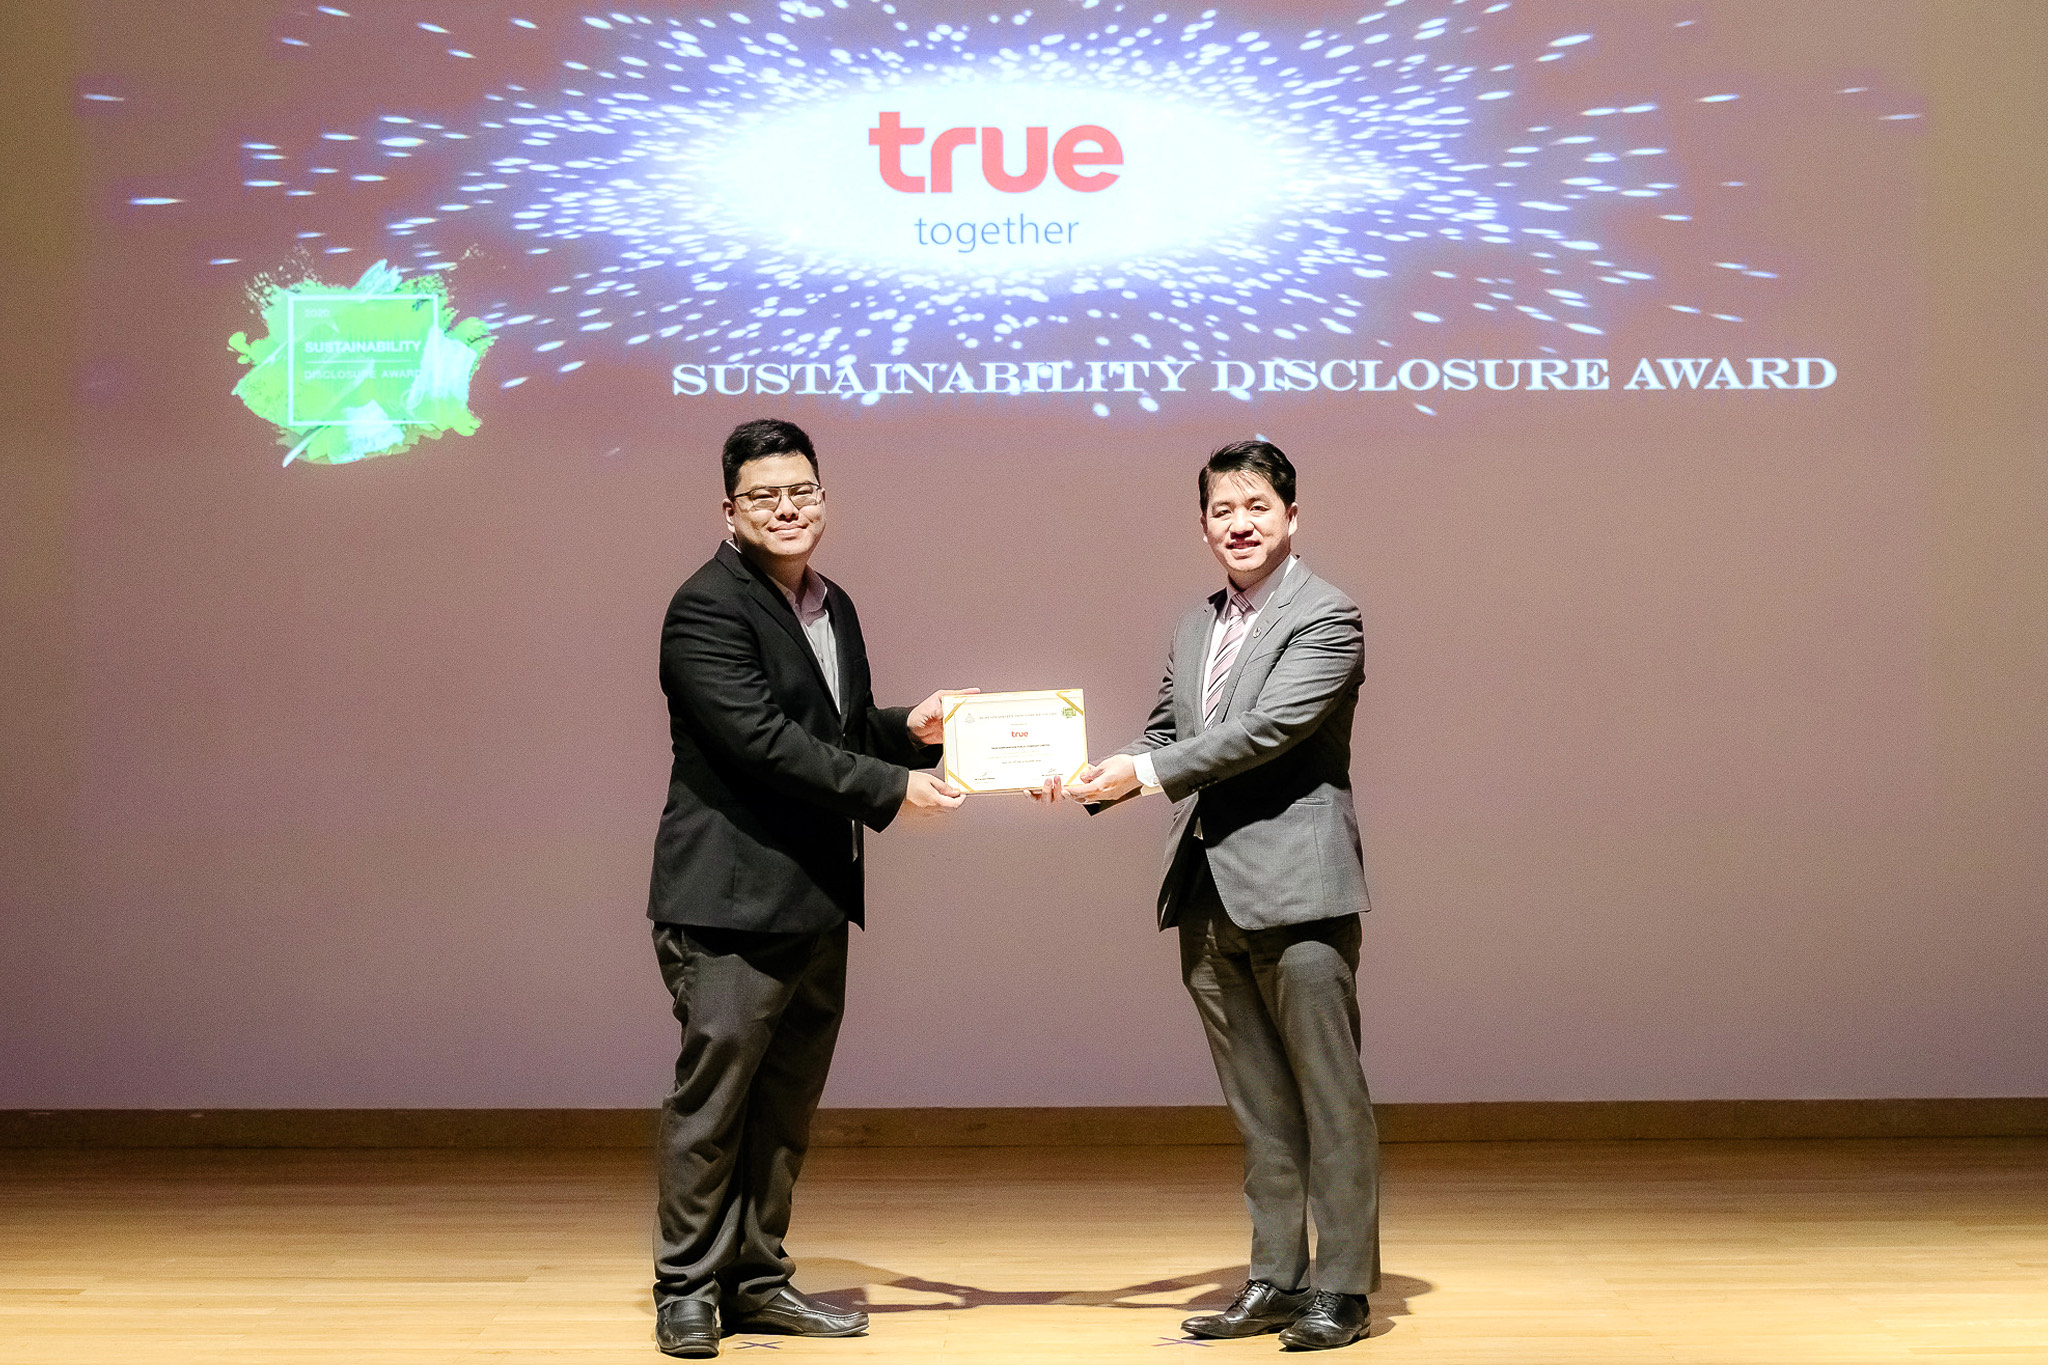 ทรู รับรางวัล “Sustainability Disclosure Award” ต่อเนื่องปีที่ 2 ตอกย้ำความโปร่งใสในการดำเนินธุรกิจ